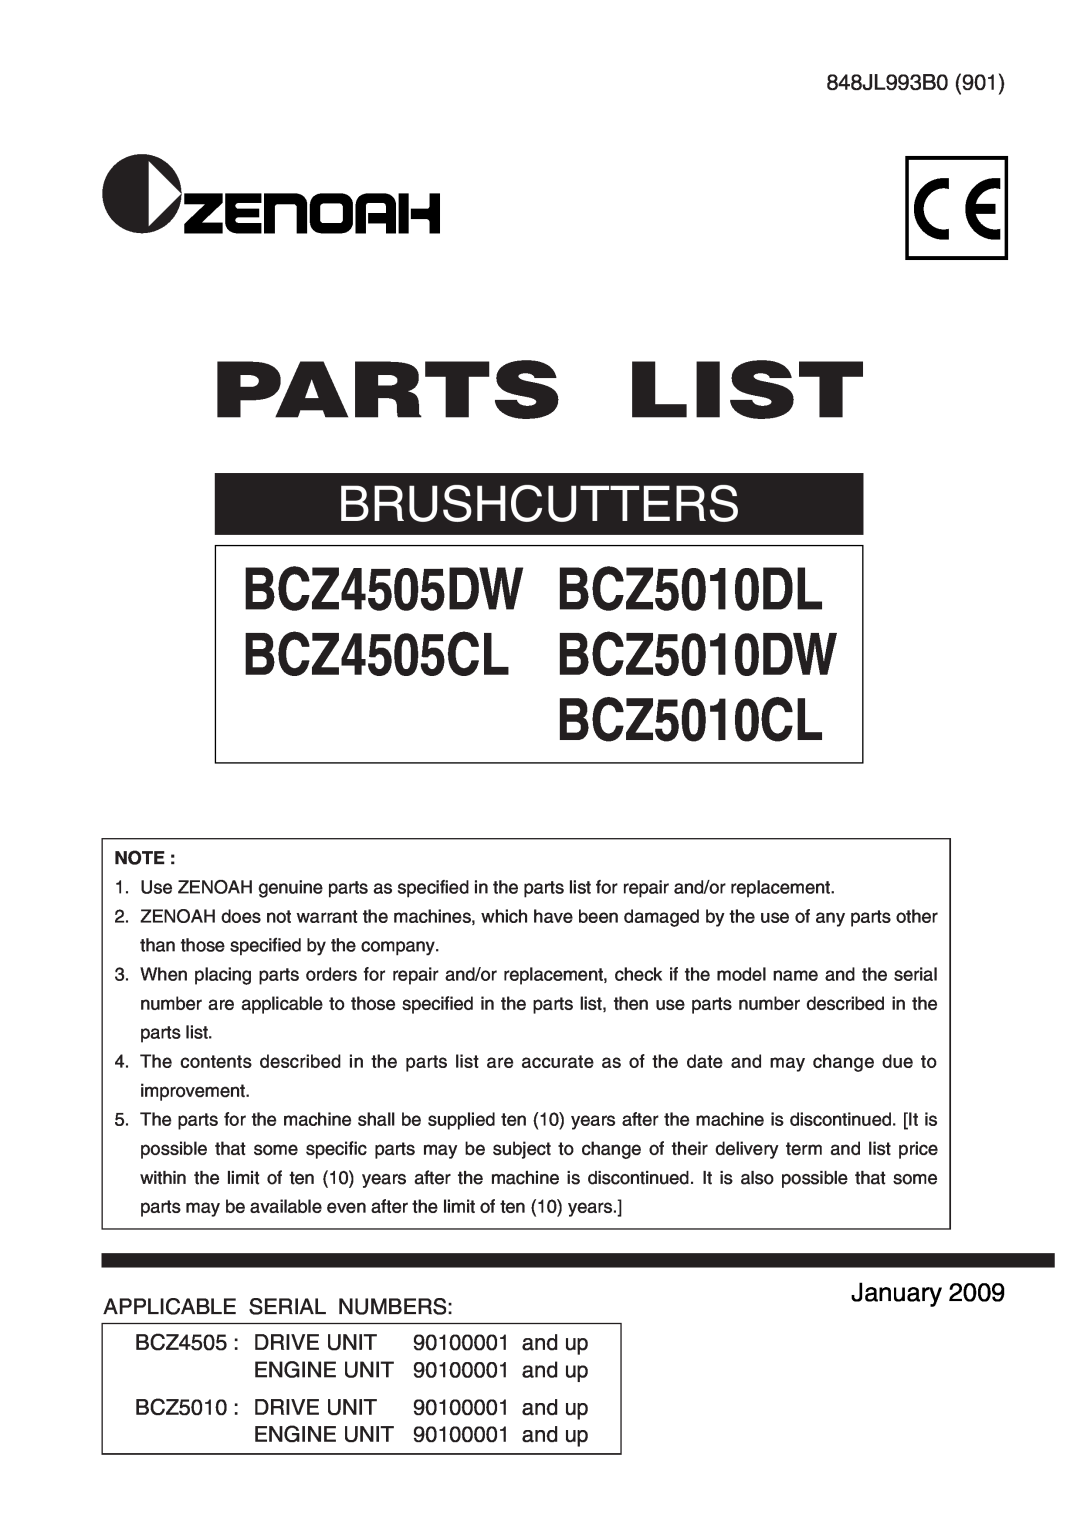 Zenoah manual Parts List, BCZ4505DW BCZ5010DL BCZ4505CL BCZ5010DW BCZ5010CL, Brushcutters, January 